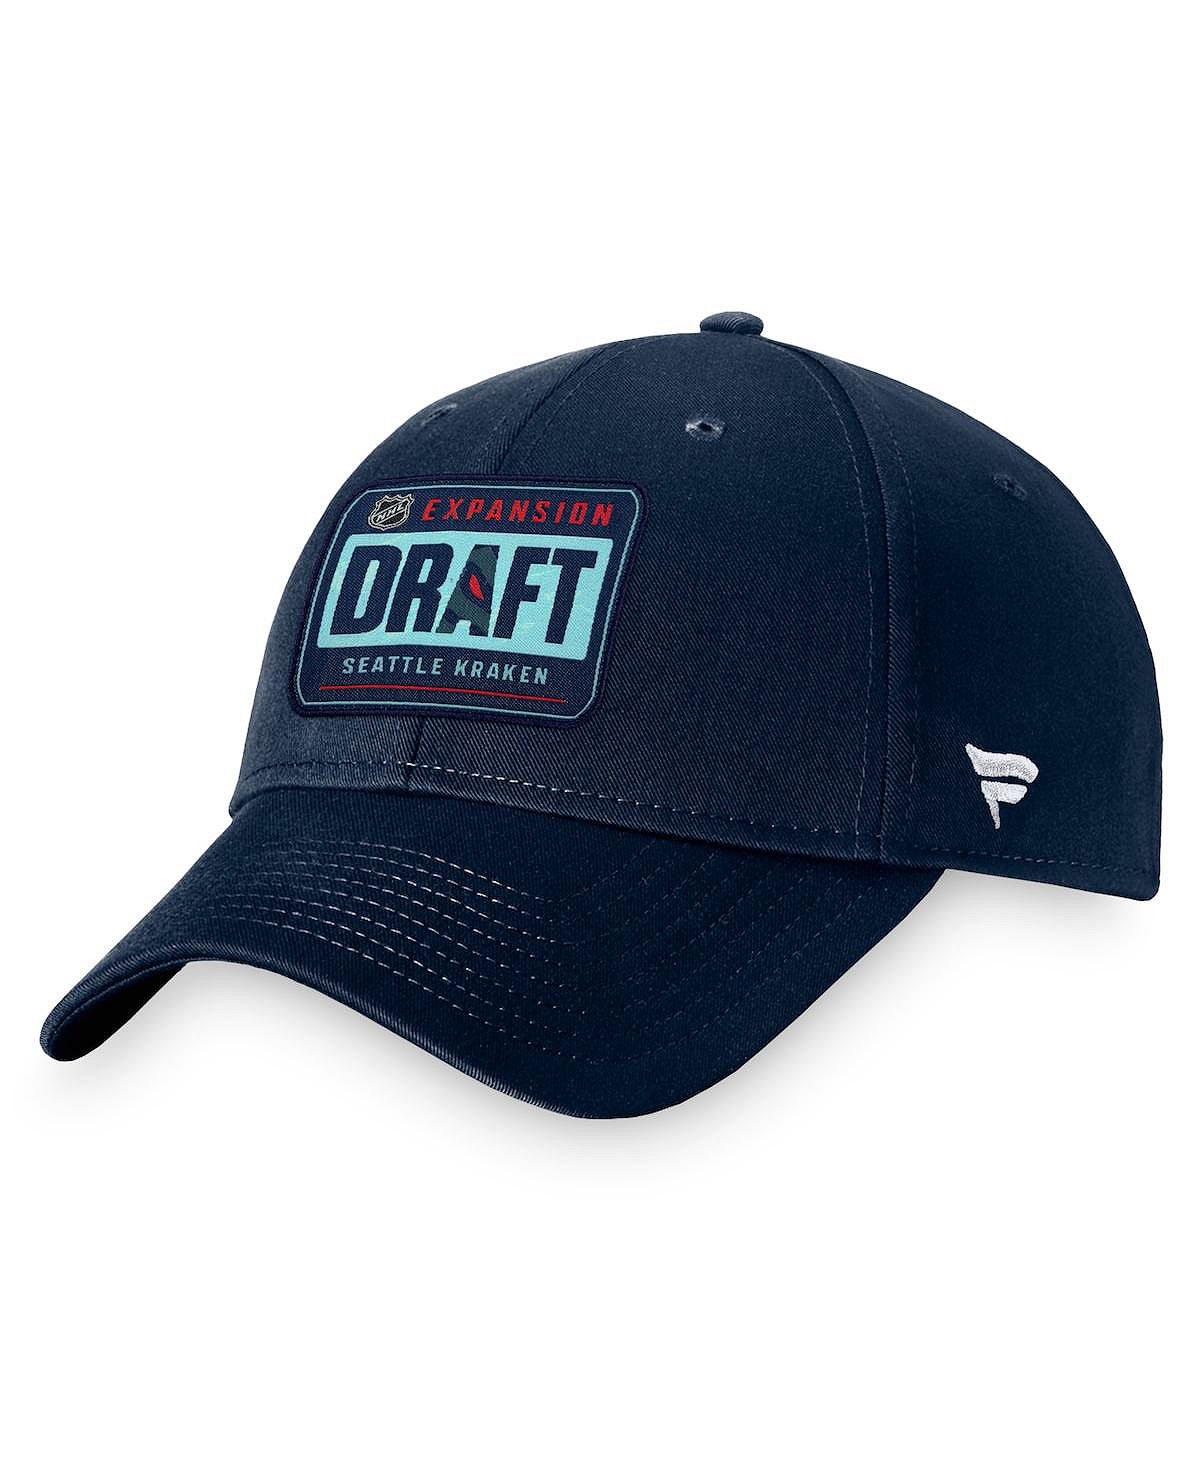 цена Мужская фирменная темно-синяя структурированная регулируемая кепка Seattle Kraken 2021 NHL Expansion Draft Fanatics